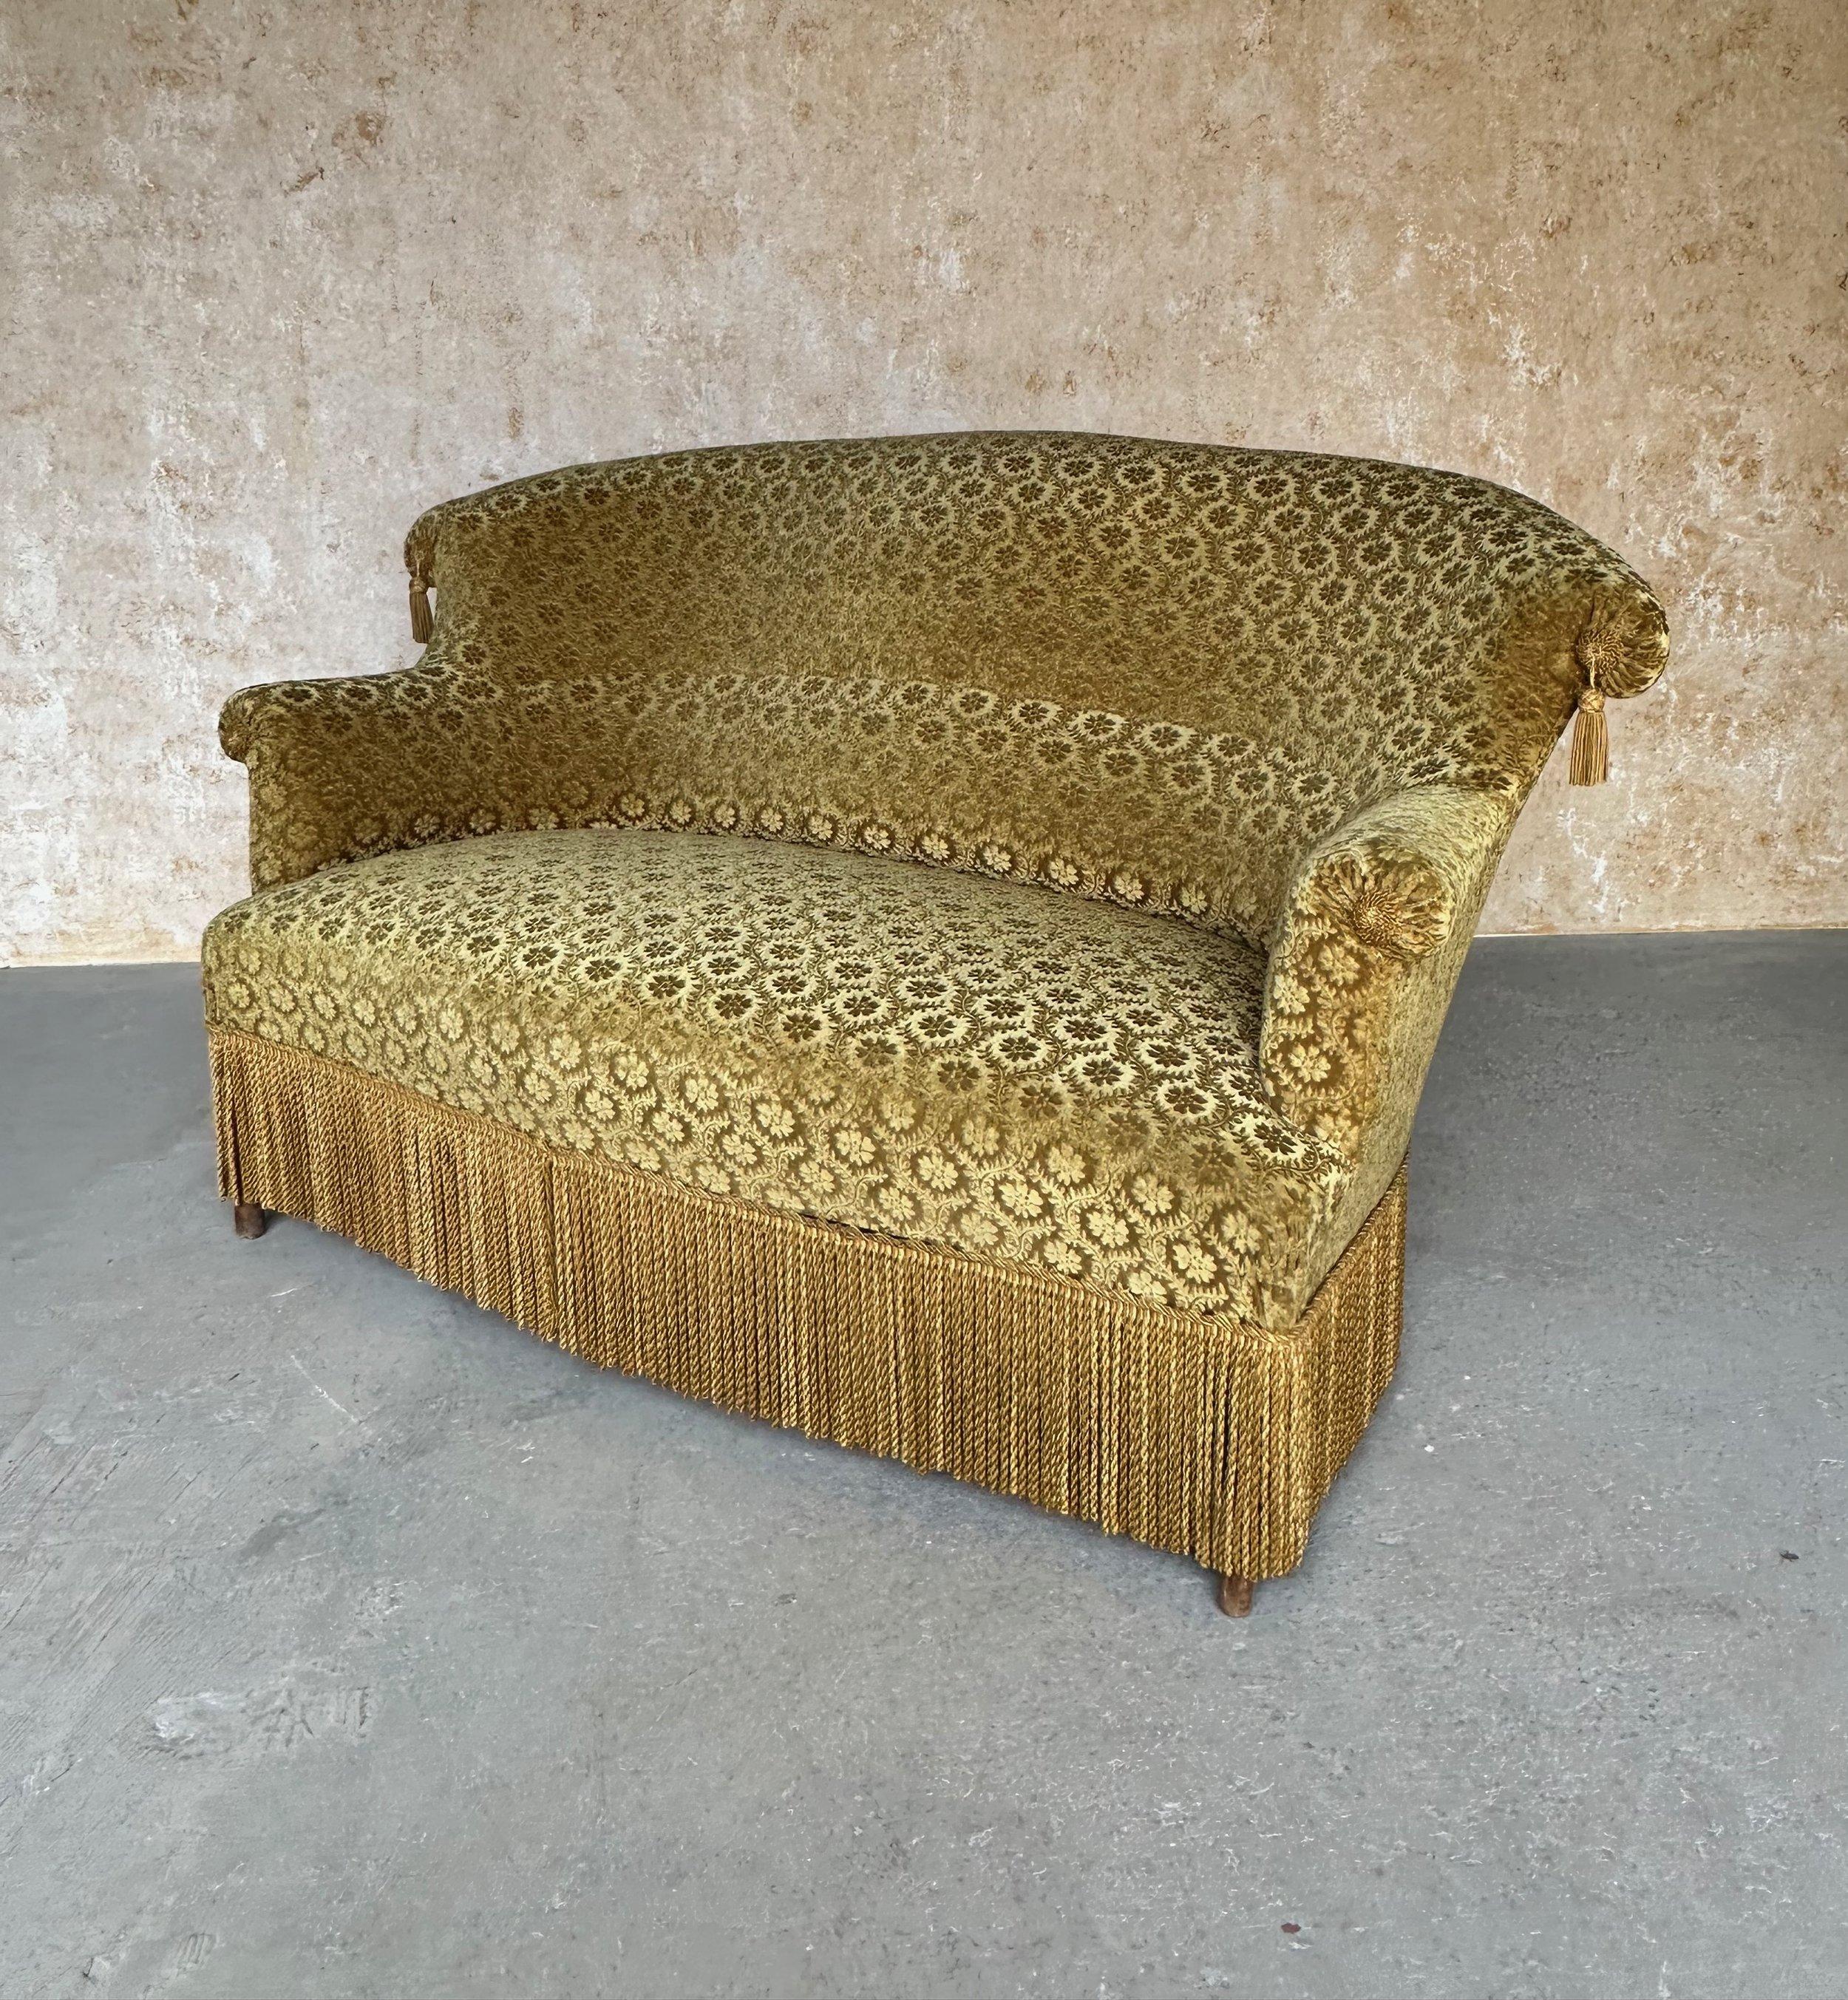 Dieses elegante französische Napoleon-III-Sofa ist mit einem plüschigen, floral gemusterten, goldenen Samt mit Quastenverzierungen und passenden Bullionfransen gepolstert. Die schön geschwungene Rückenlehne und die eingebaute Lendenwirbelstütze, die